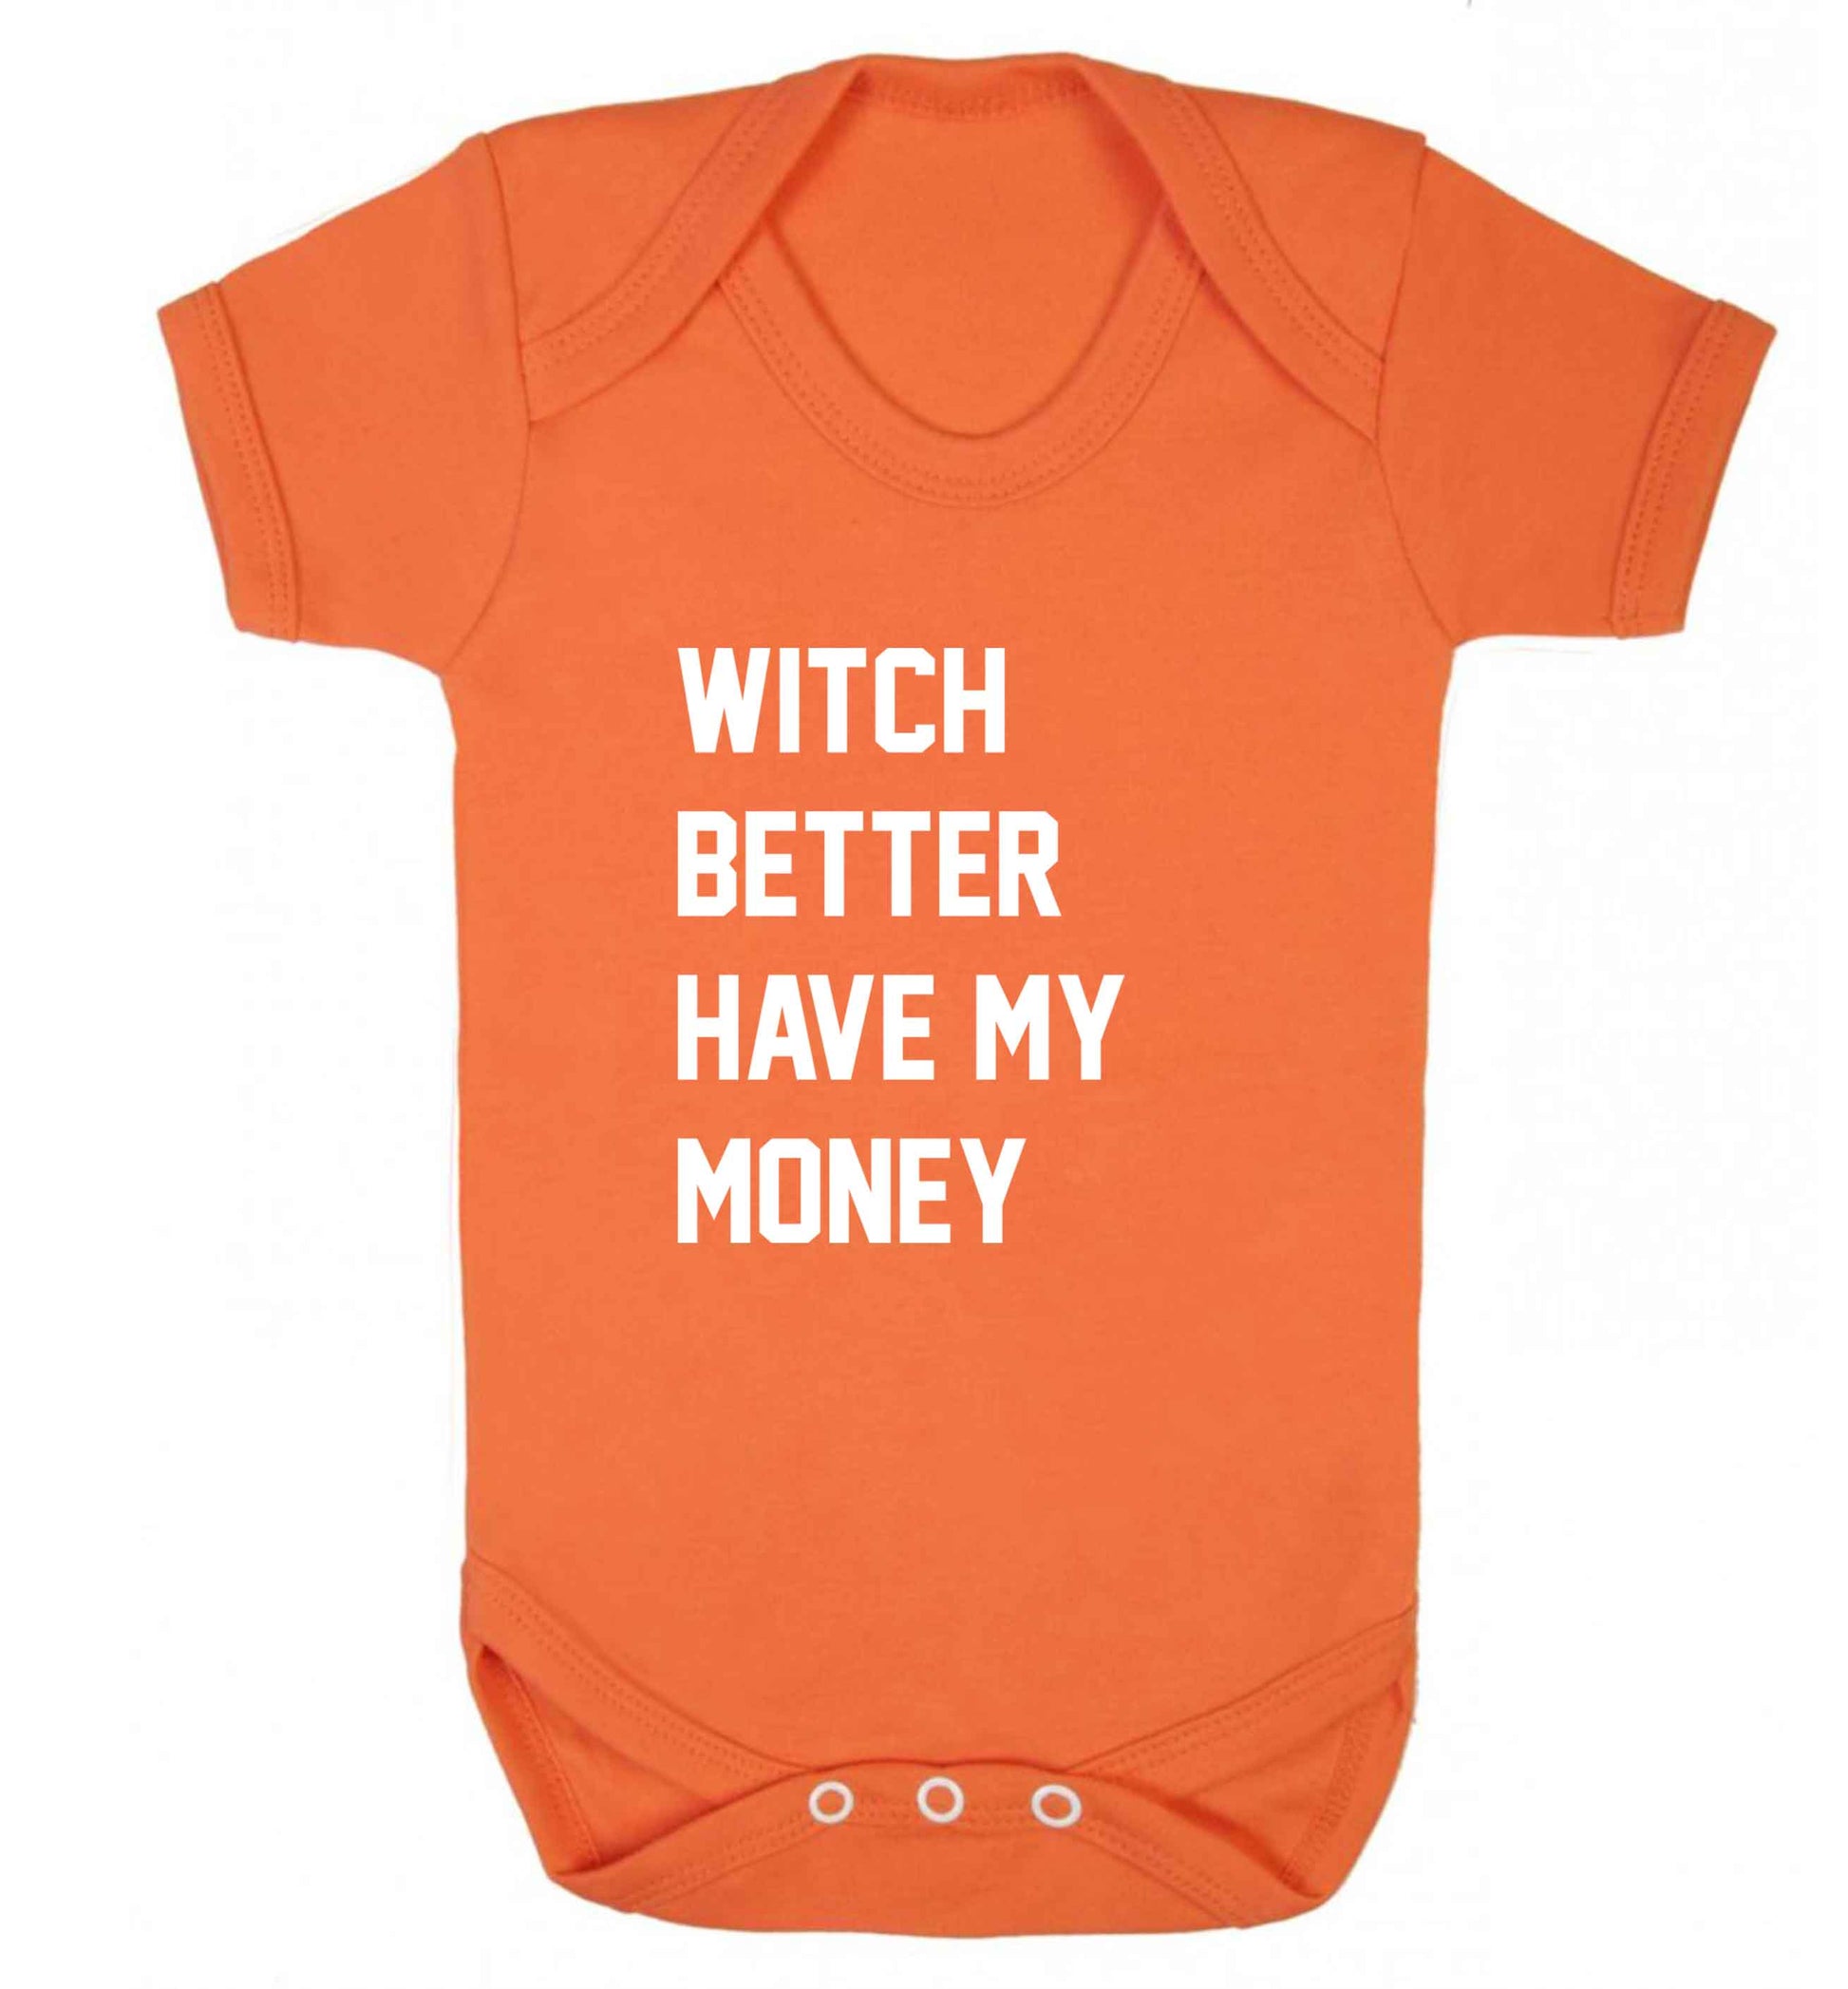 Witch better have my money baby vest orange 18-24 months